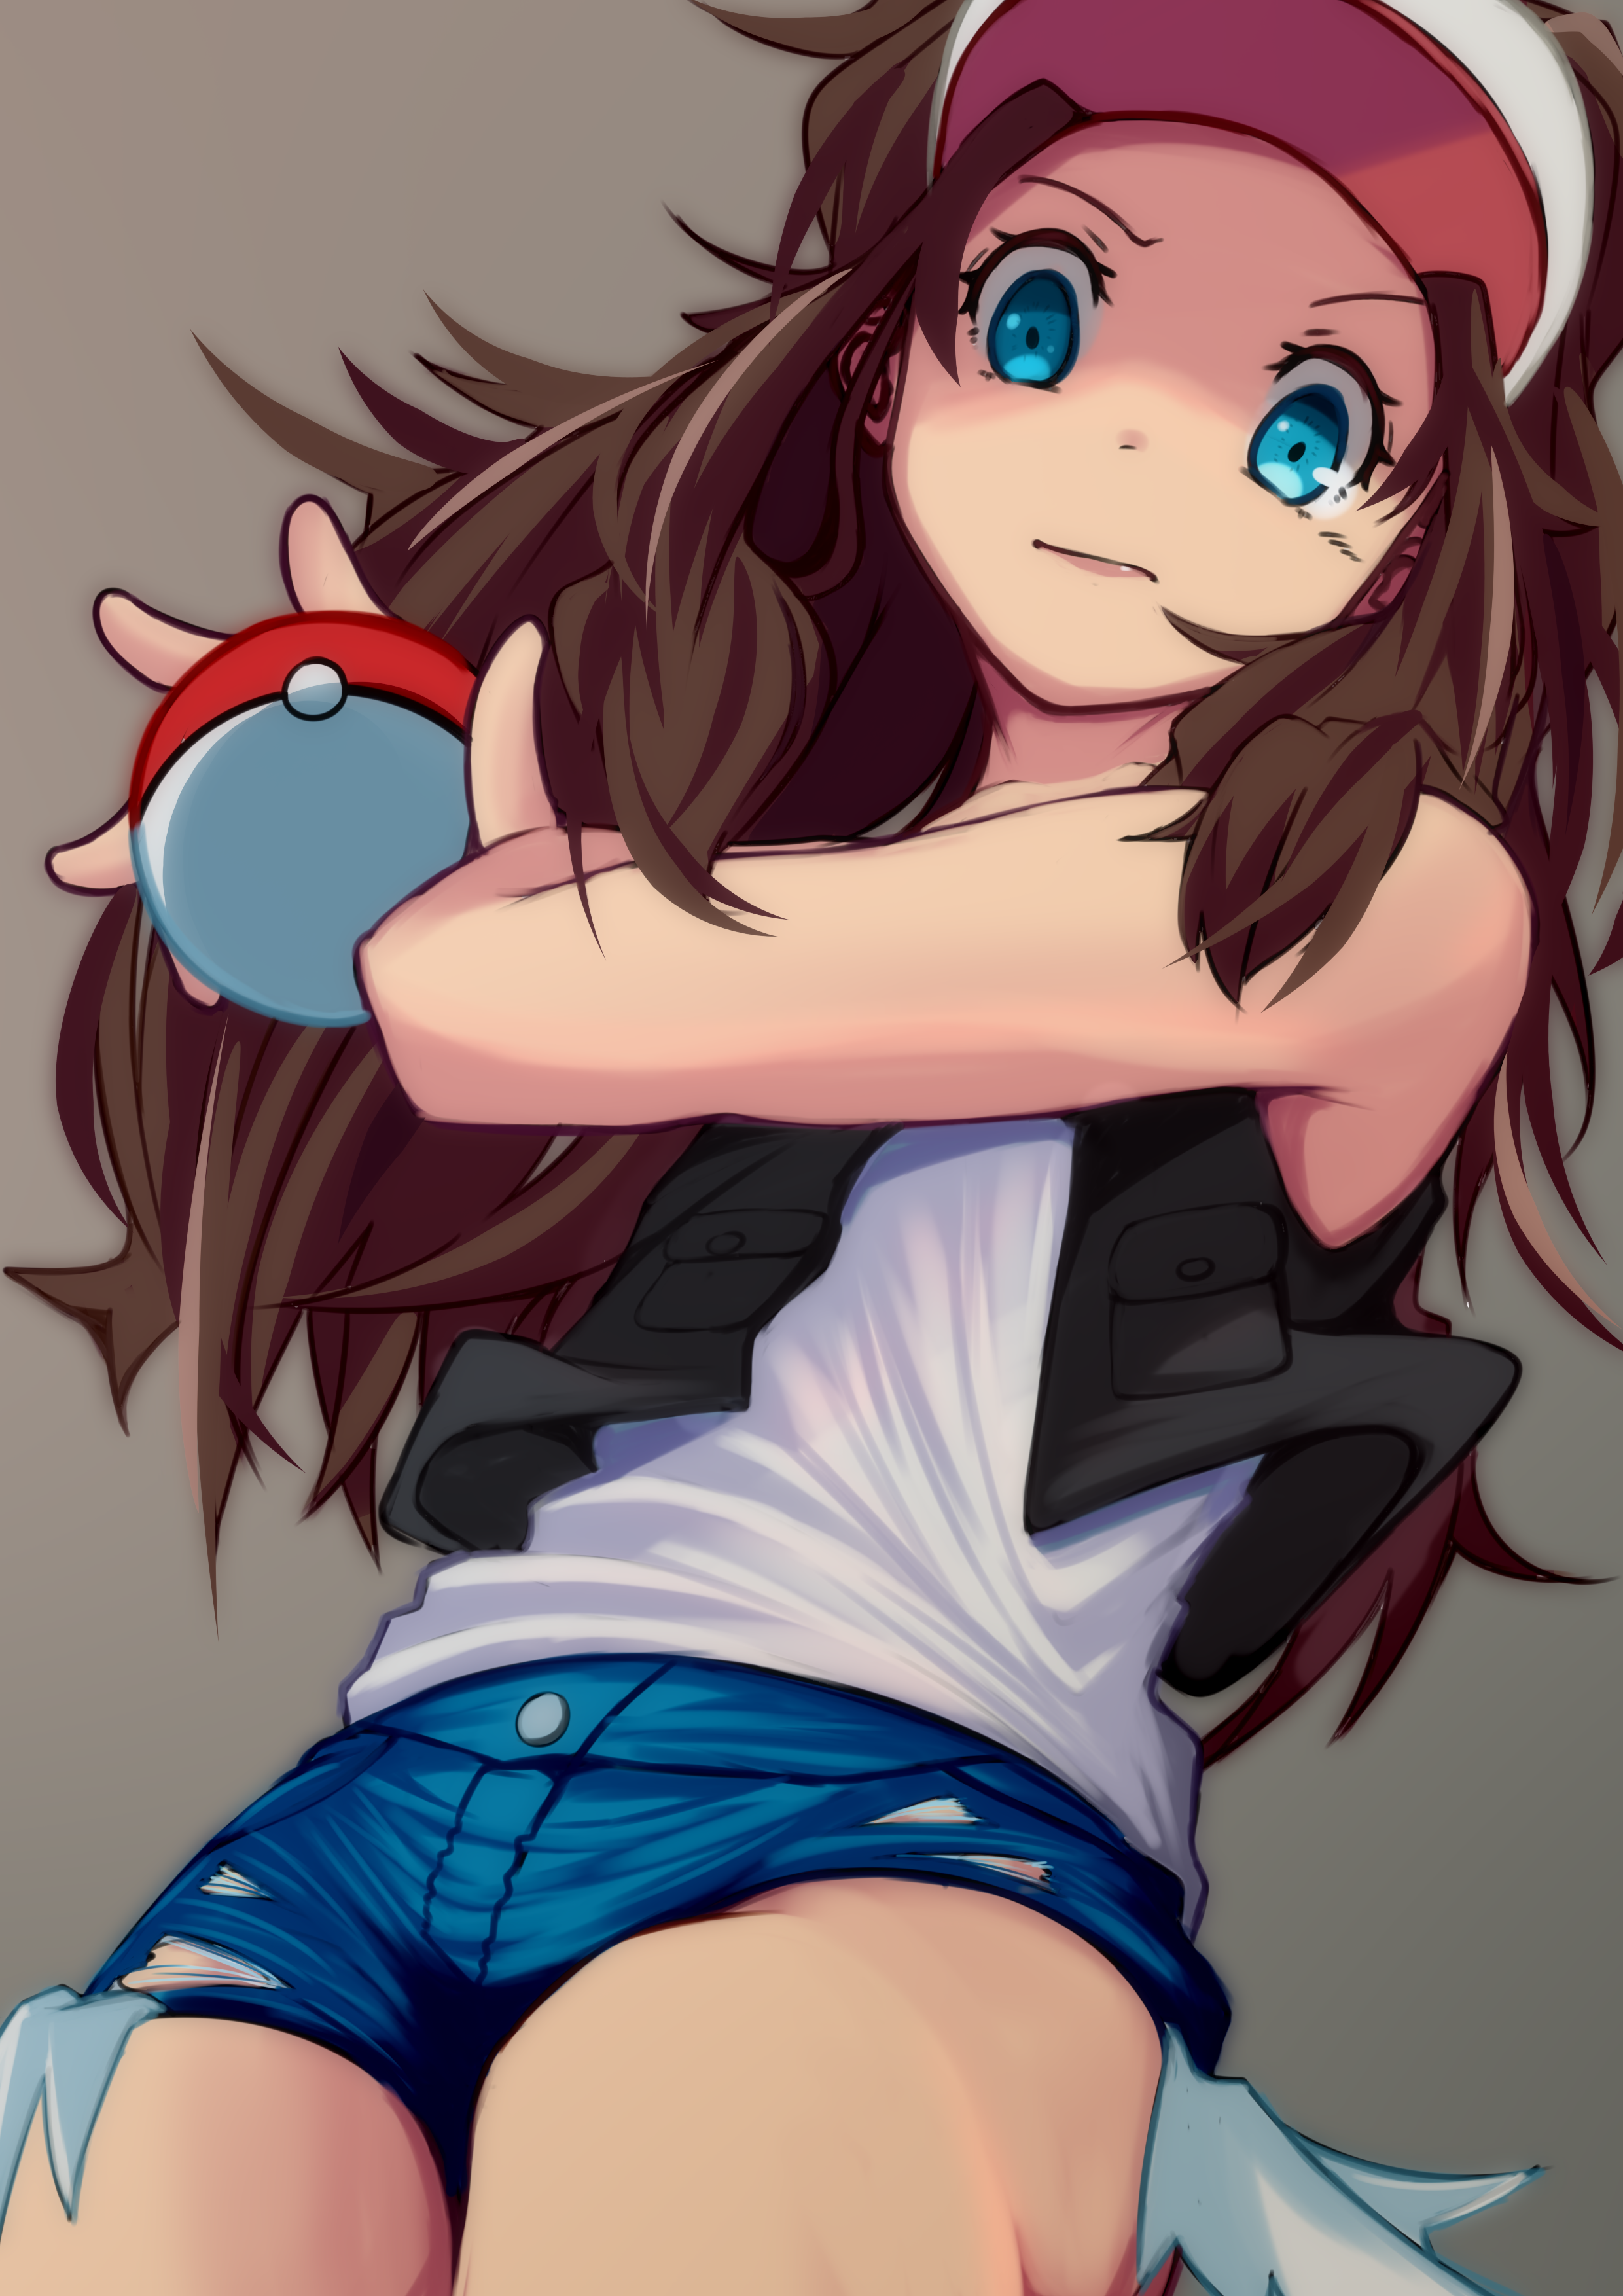 Anime Anime Girls Pokemon Hilda Pokemon Long Hair Ponytail Brunette Solo Artwork Digital Art Fan Art 2480x3508